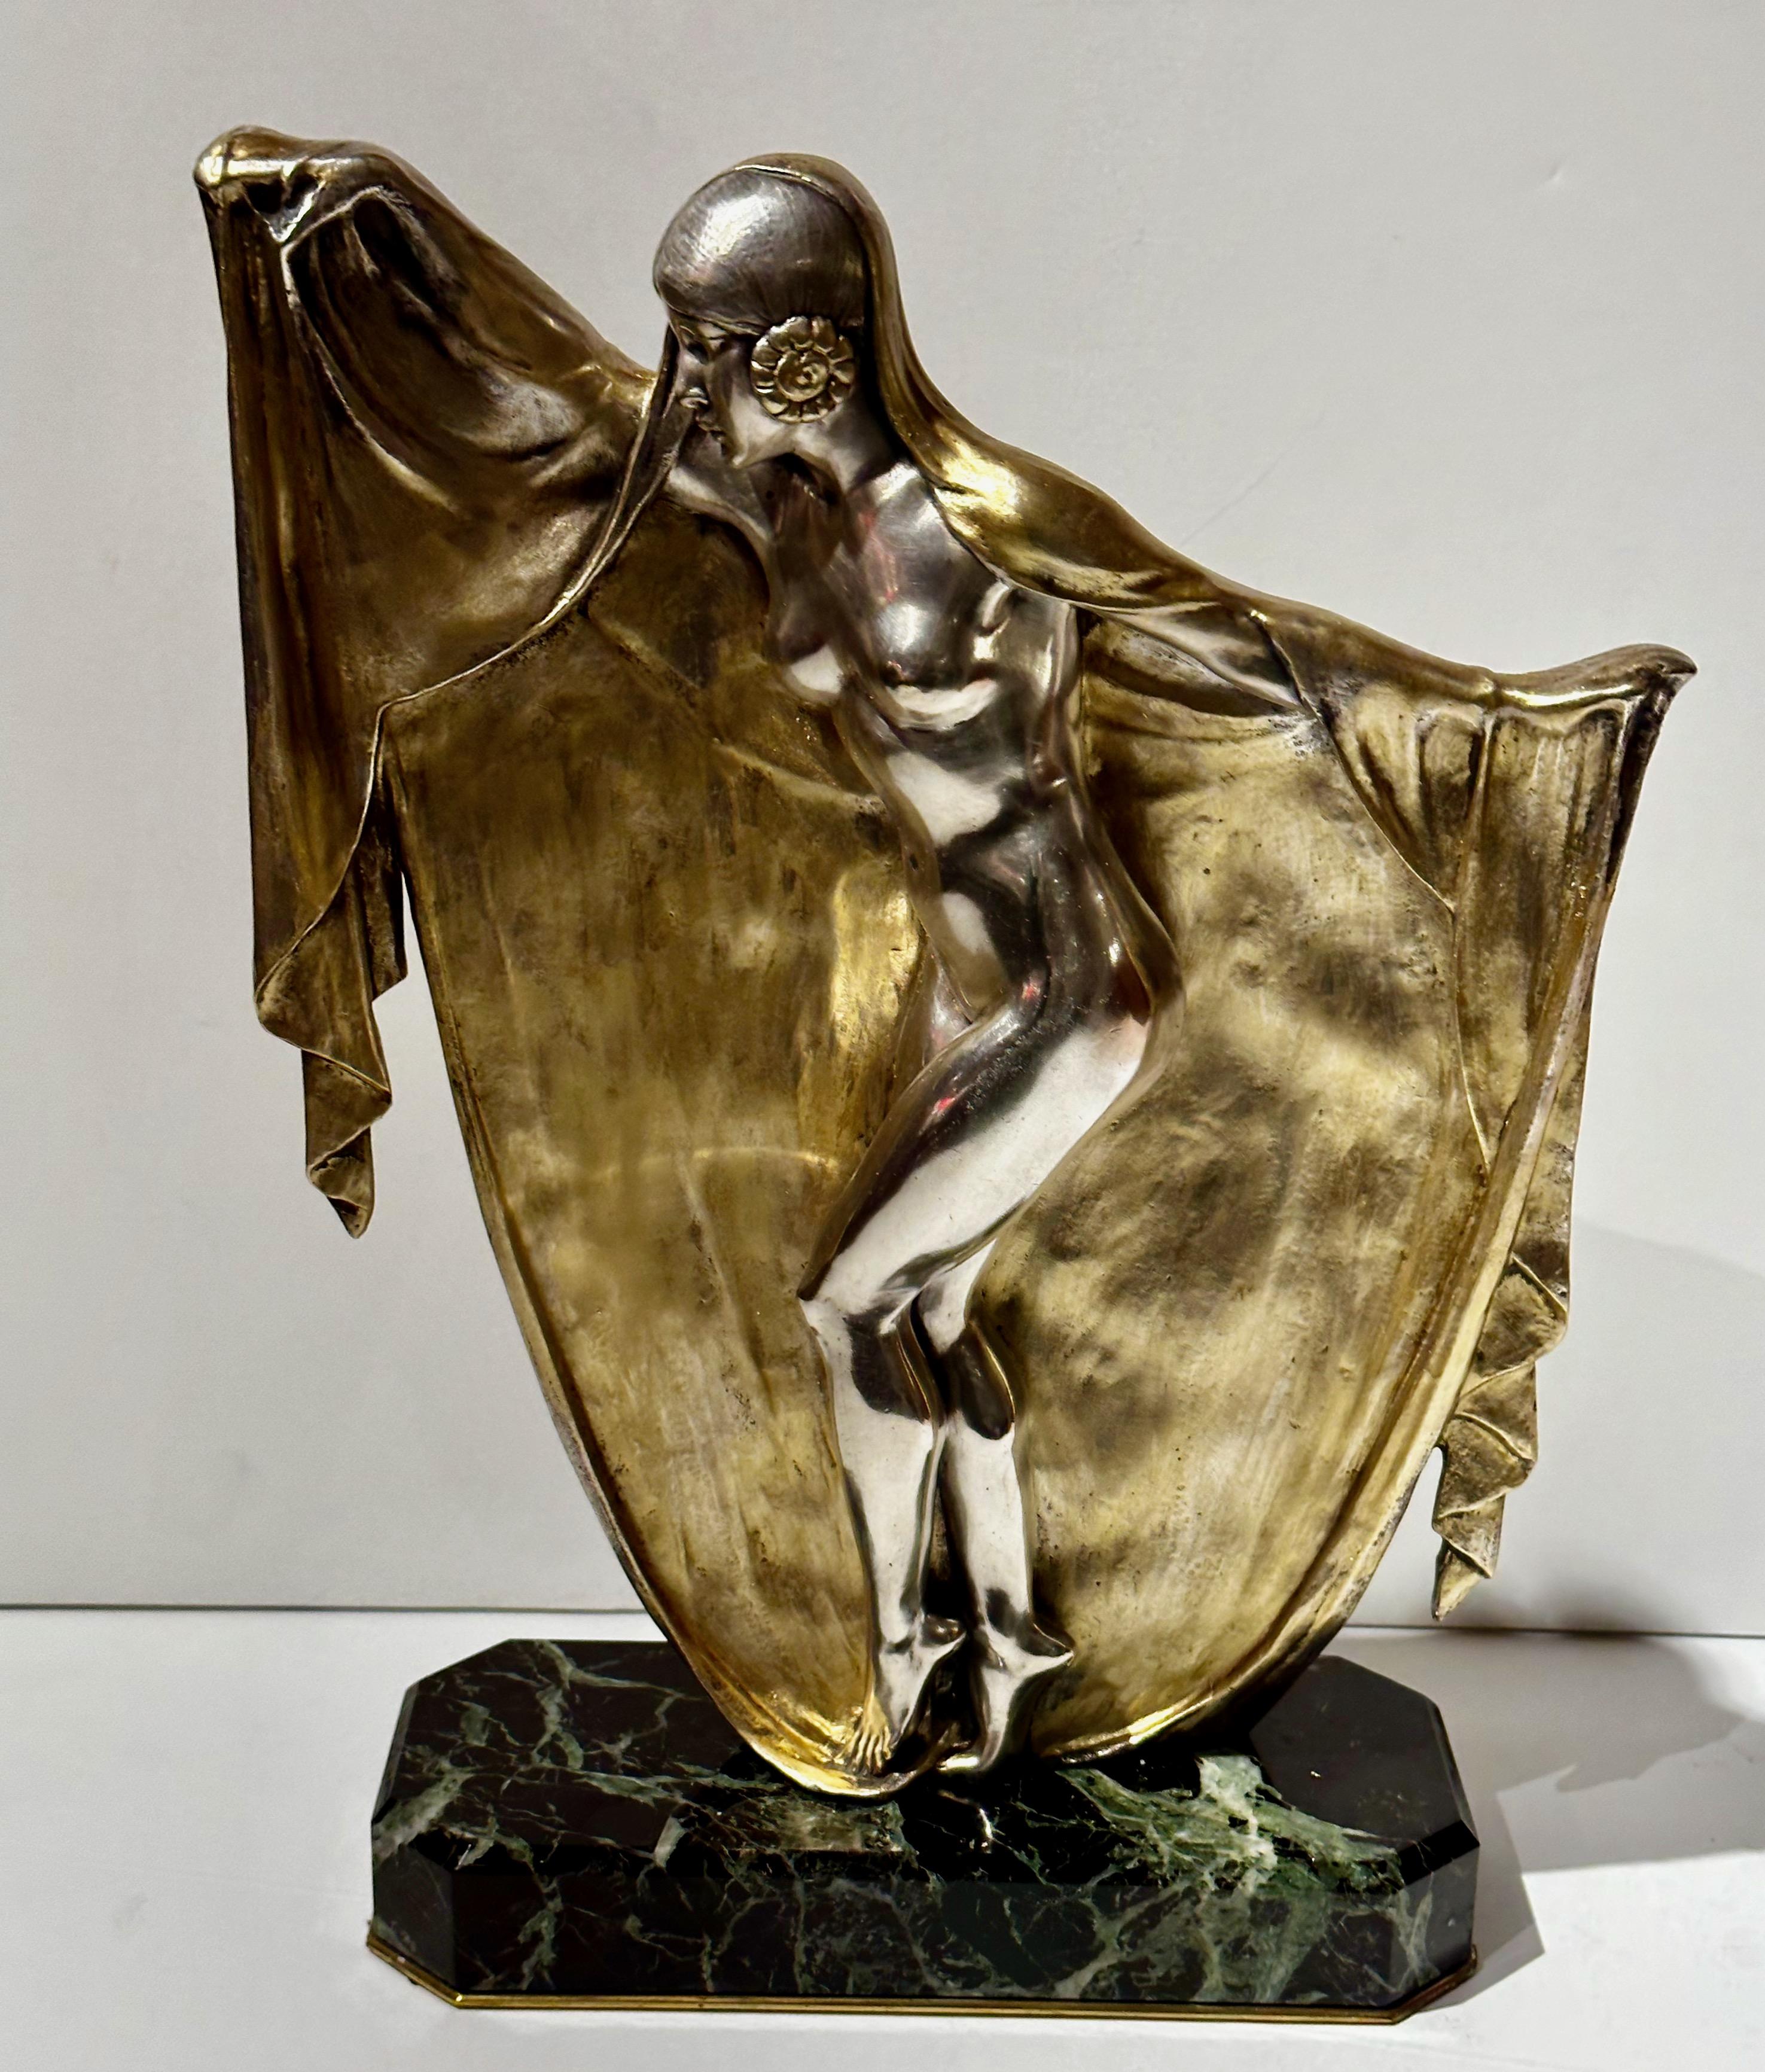 Schleiertänzerin aus Bronze im Art déco-Stil, montiert auf Marmor von Armand Lemo. Diese Skulptur stellt eine tanzende Frau im Art-Déco-Stil dar, in deren Gestaltung ein schleierartiges Element integriert ist. Bei dieser doppelt patinierten